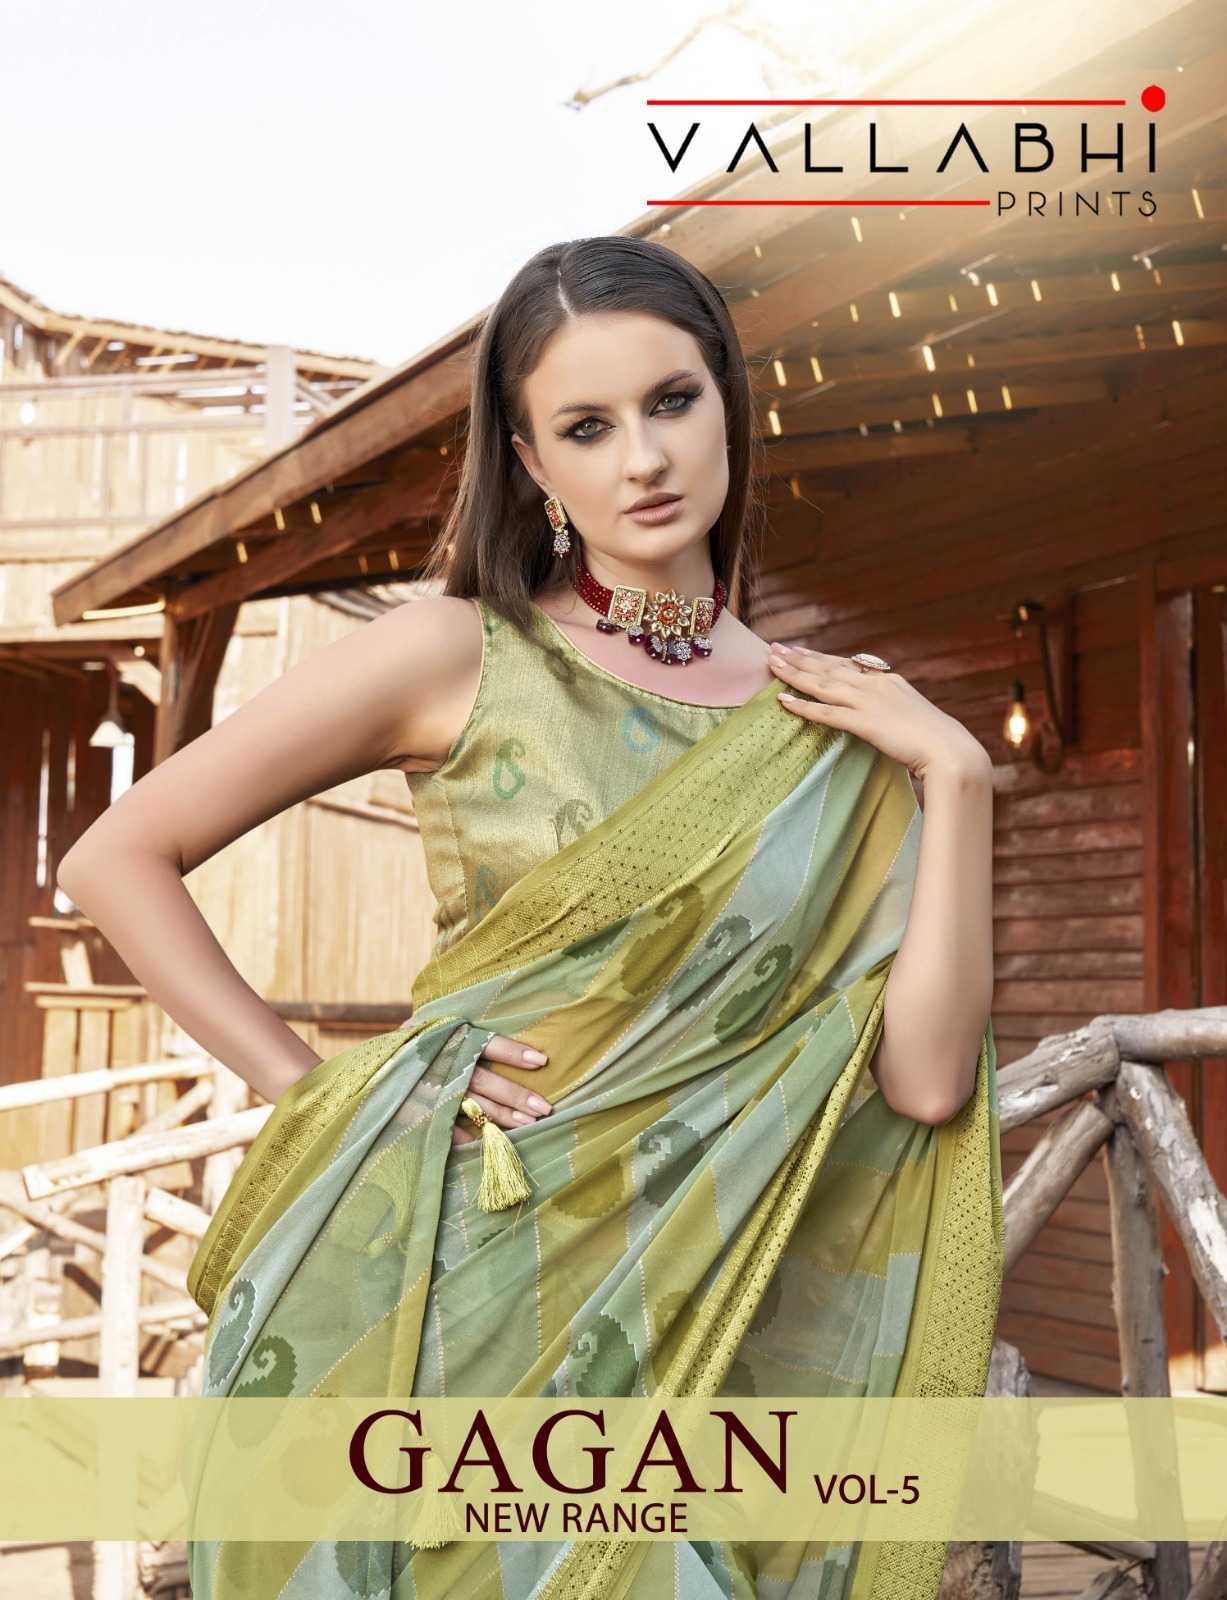 vallabhi prints gagan vol 5 georgette amazing wear saree supplier 